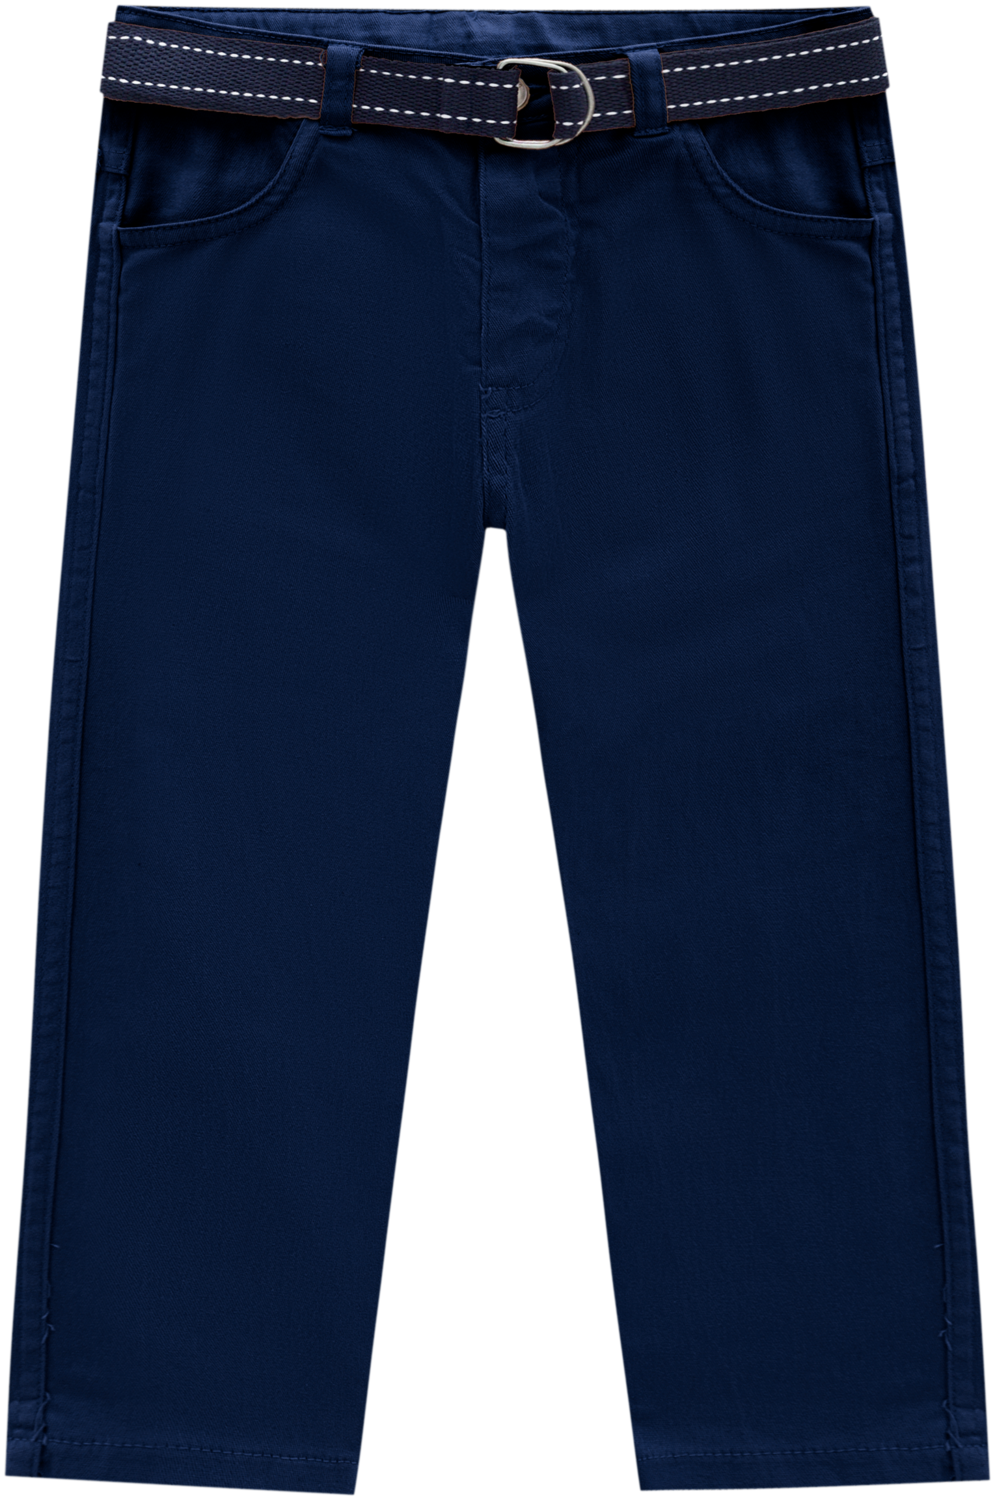 Milon Boys Blue/Navy Pants 791*